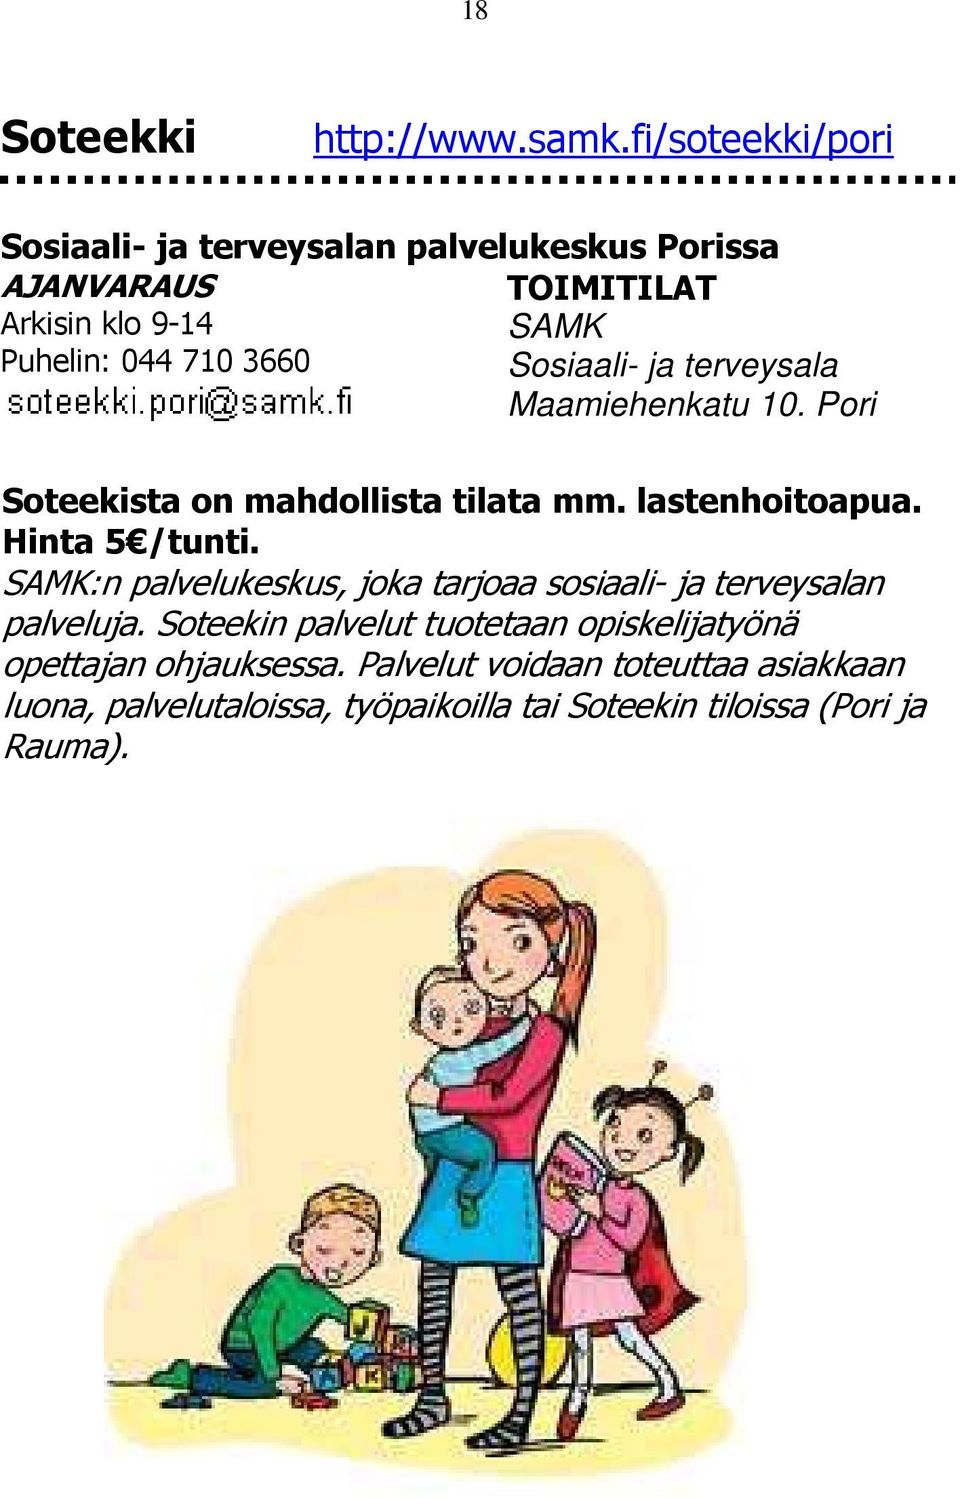 Sosiaali- ja terveysala Maamiehenkatu 10. Pori Soteekista on mahdollista tilata mm. lastenhoitoapua. Hinta 5 /tunti.